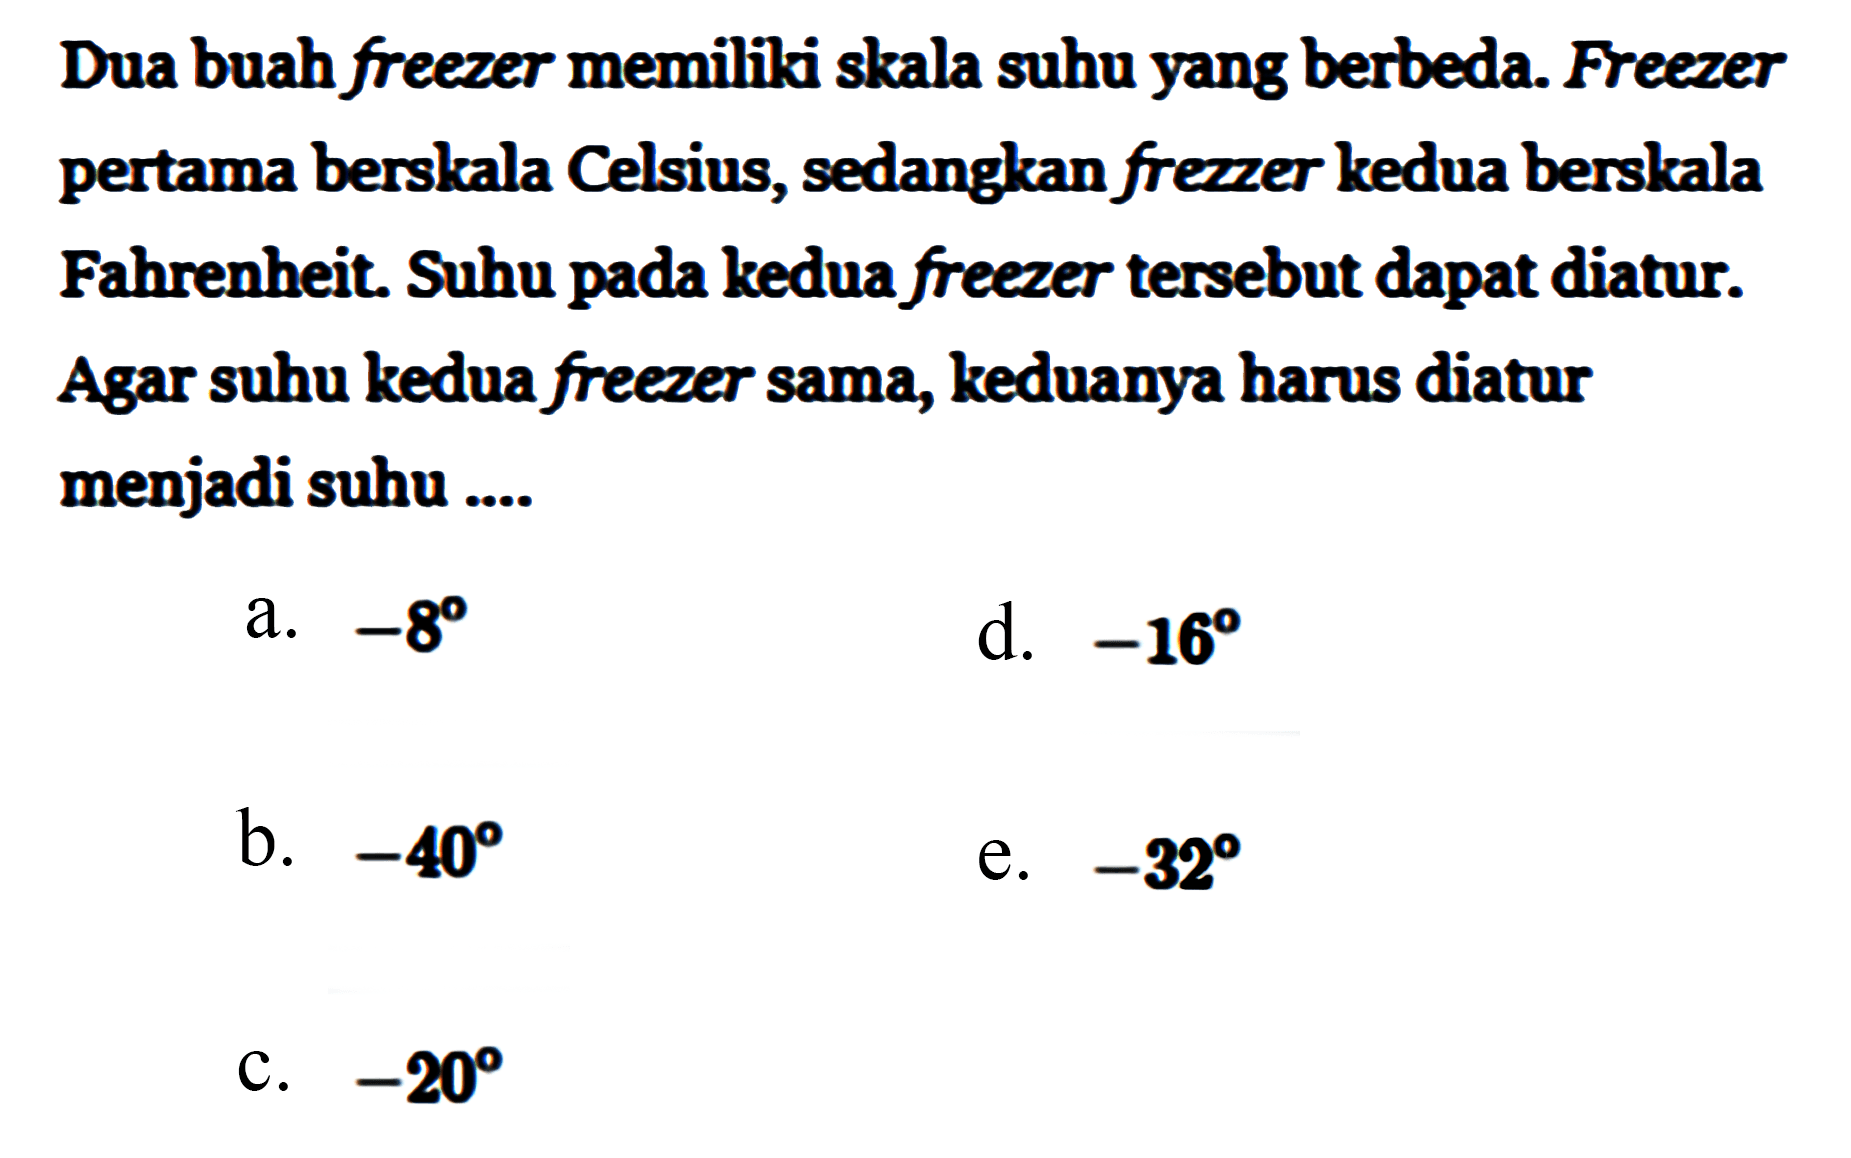 Dua buah freezer memiliki skala suhu yang berbeda. Freezer pertama berskala Celsius, sedangkan frezzer kedua berskala Fahrenheit. Suhu pada kedua freezer tersebut dapat diatur. Agar suhu kedua freezer sama, keduanya harus diatur menjadi suhu .... 